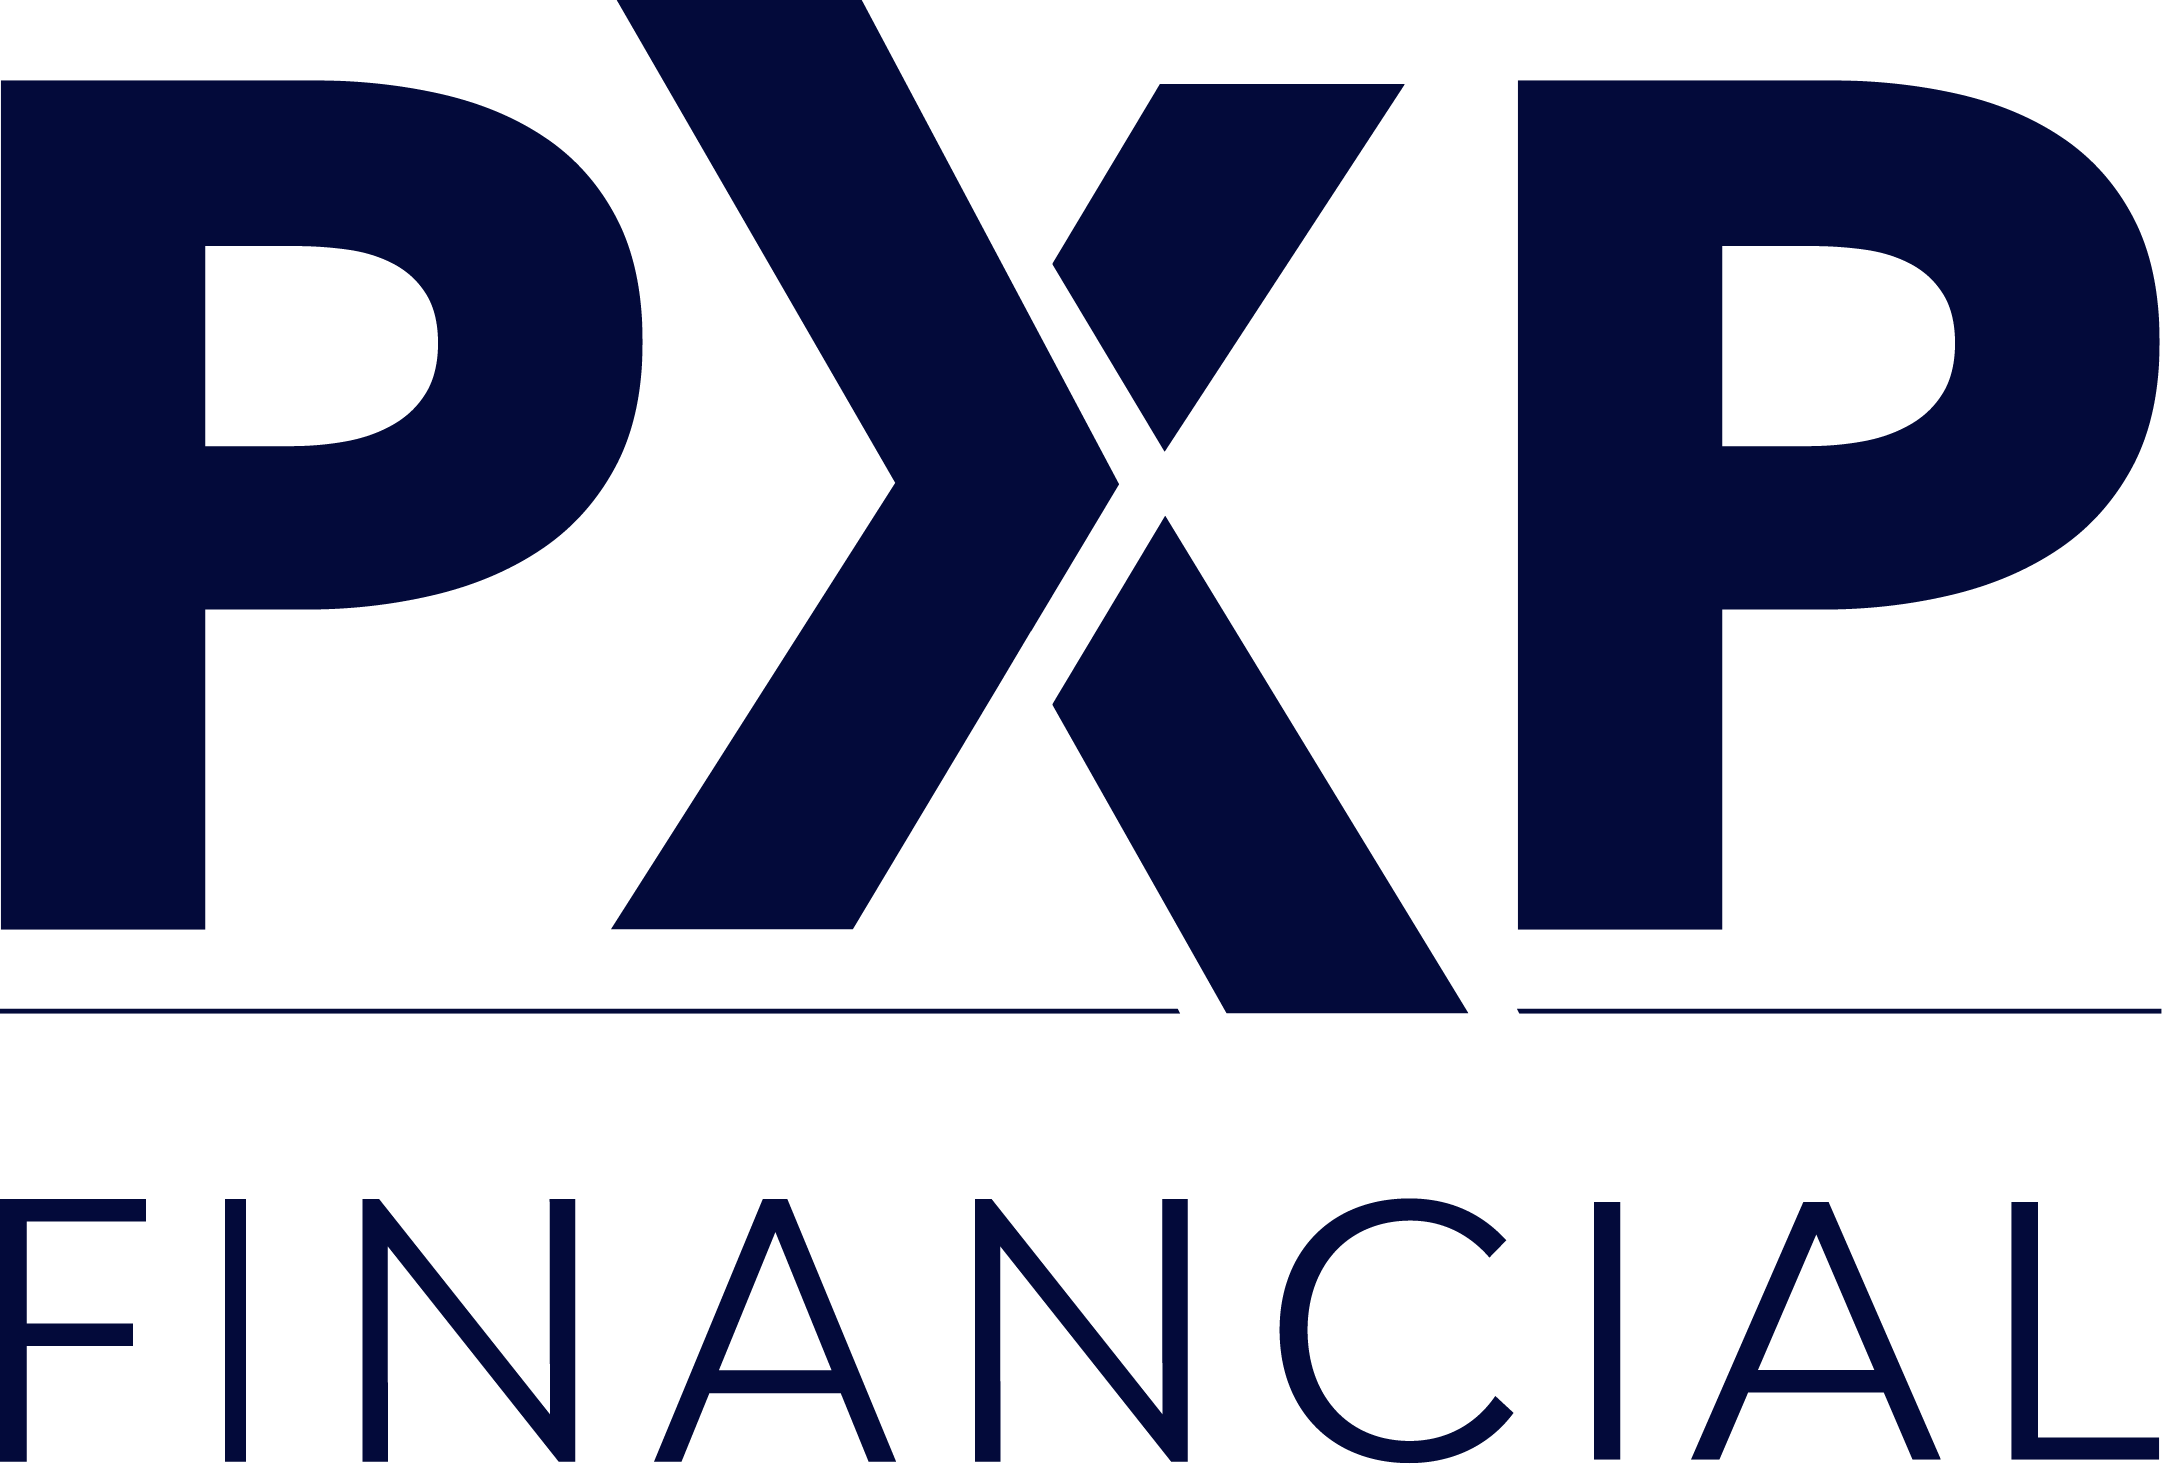 PXP Financial